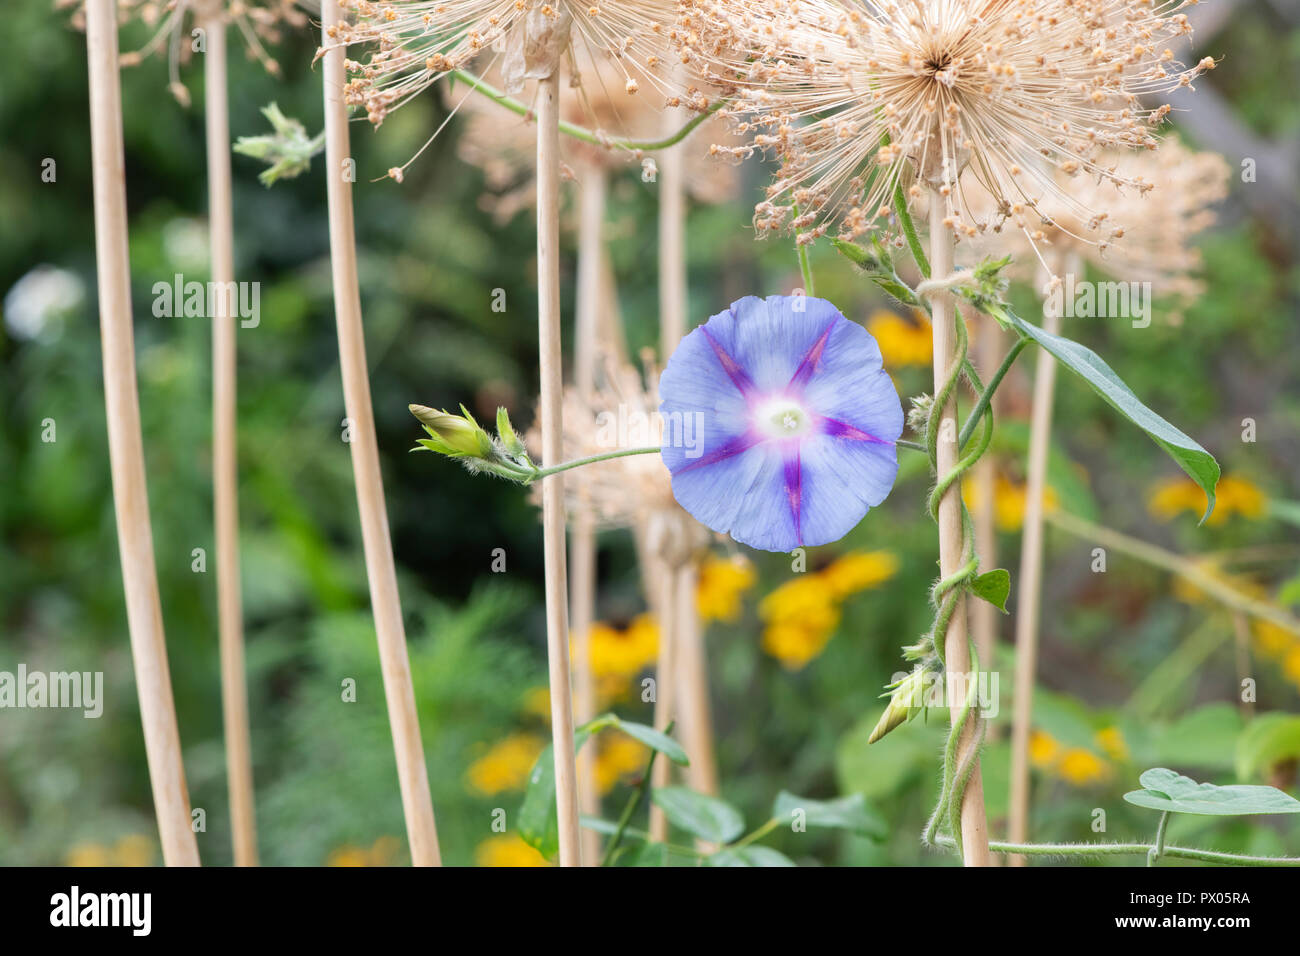 Ipomoea purpurea 'Dacapo Light Blue'. Morning Glory Blumen rund um alte getrocknete Allium Blume in einem englischen Garten stammt. Großbritannien Stockfoto